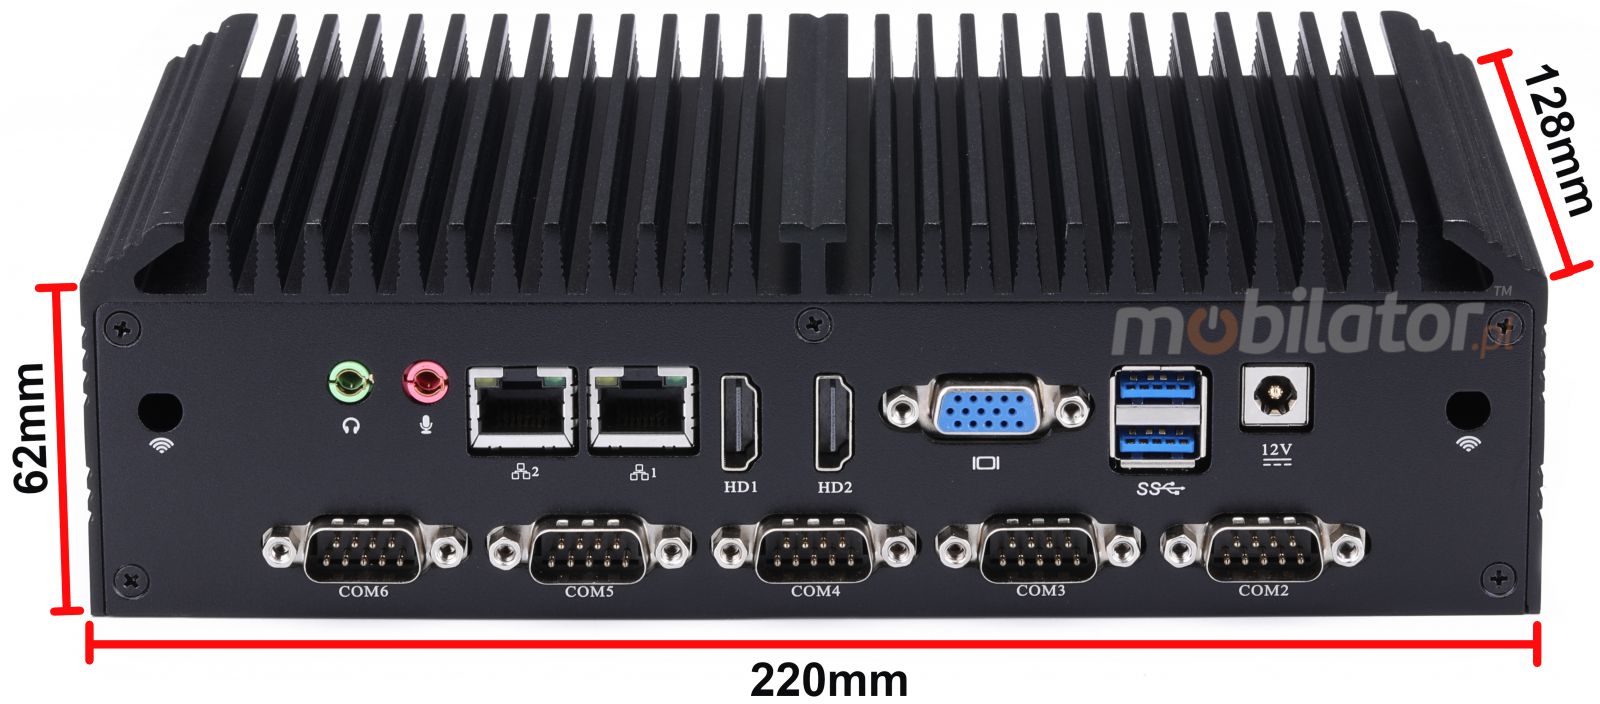 mBox X105 v.6 - wytrzymaly Mini PC z dyskiem HDD o pojemnoci 500GB / 16GB RAM / Wifi + Bluetooth / 2 porty HDMI (6x RS-232, 4x USB 3.0) - Wymiary